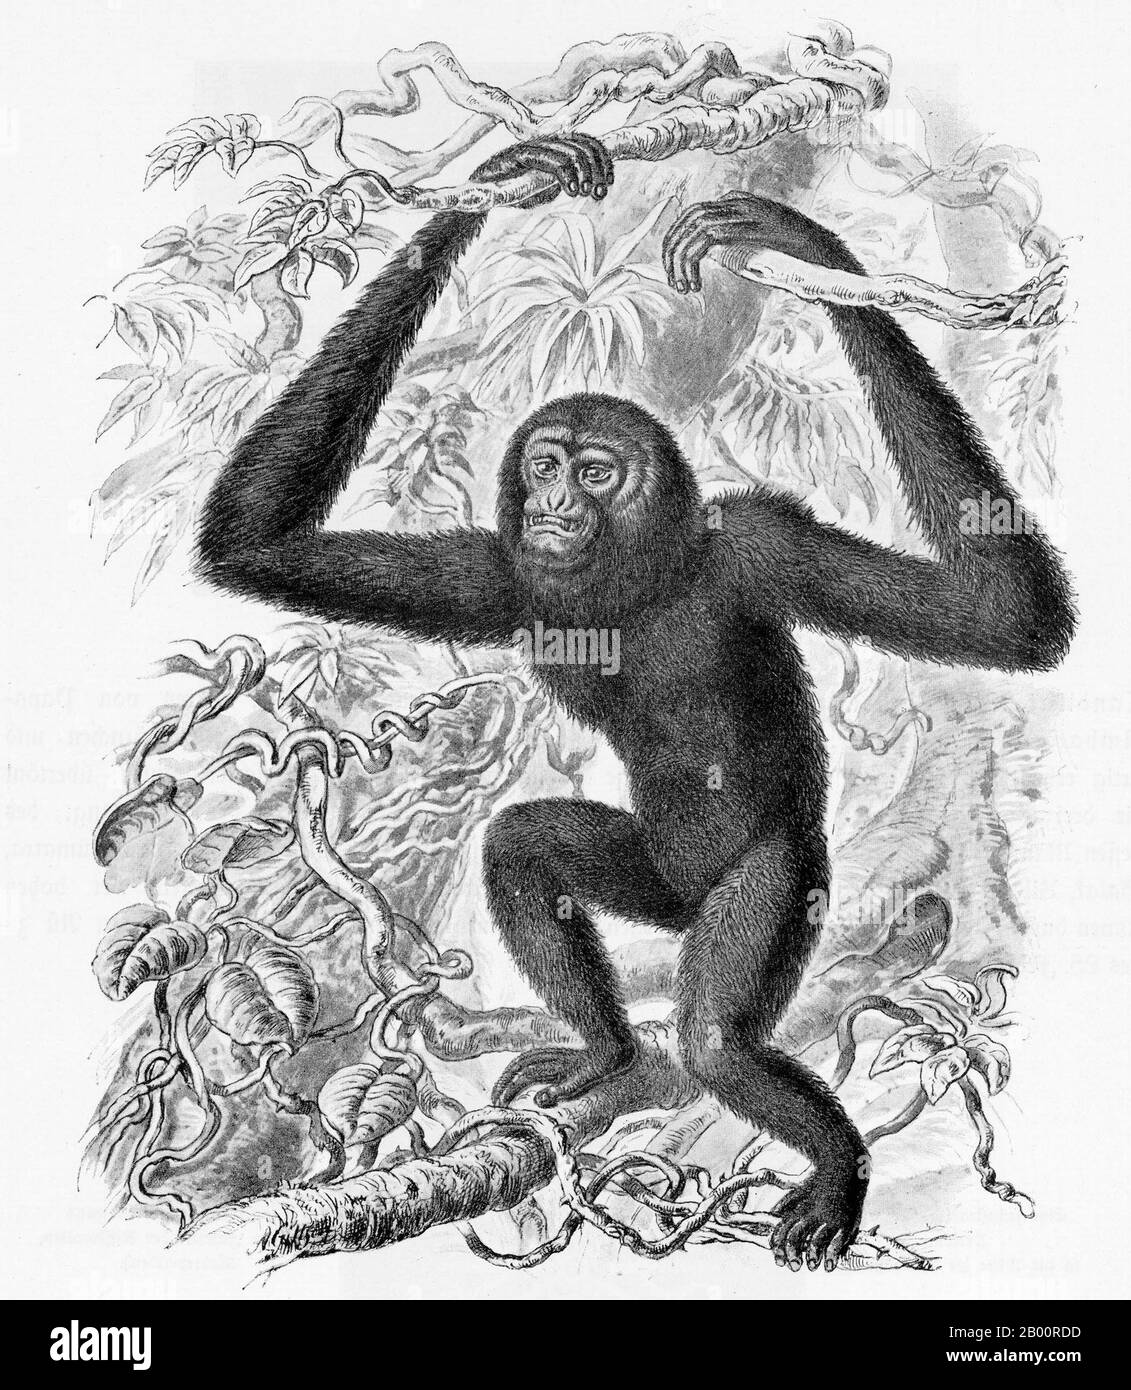 Indonésie/Allemagne: Un gibbon à fourrure noire ou siamang, Sumatra. Gravure par Ernst Haeckel (1834-1919) le Siamang (Symphalange syndactylus) est un gibbon à fourrure noire, arboricole et arrière, originaire des forêts de Malaisie, de Thaïlande et de Sumatra. Le plus grand des petits singes, le Siamang peut avoir deux fois la taille des autres gibbons, atteignant 1 m de hauteur et pesant jusqu'à 14 kg. Banque D'Images